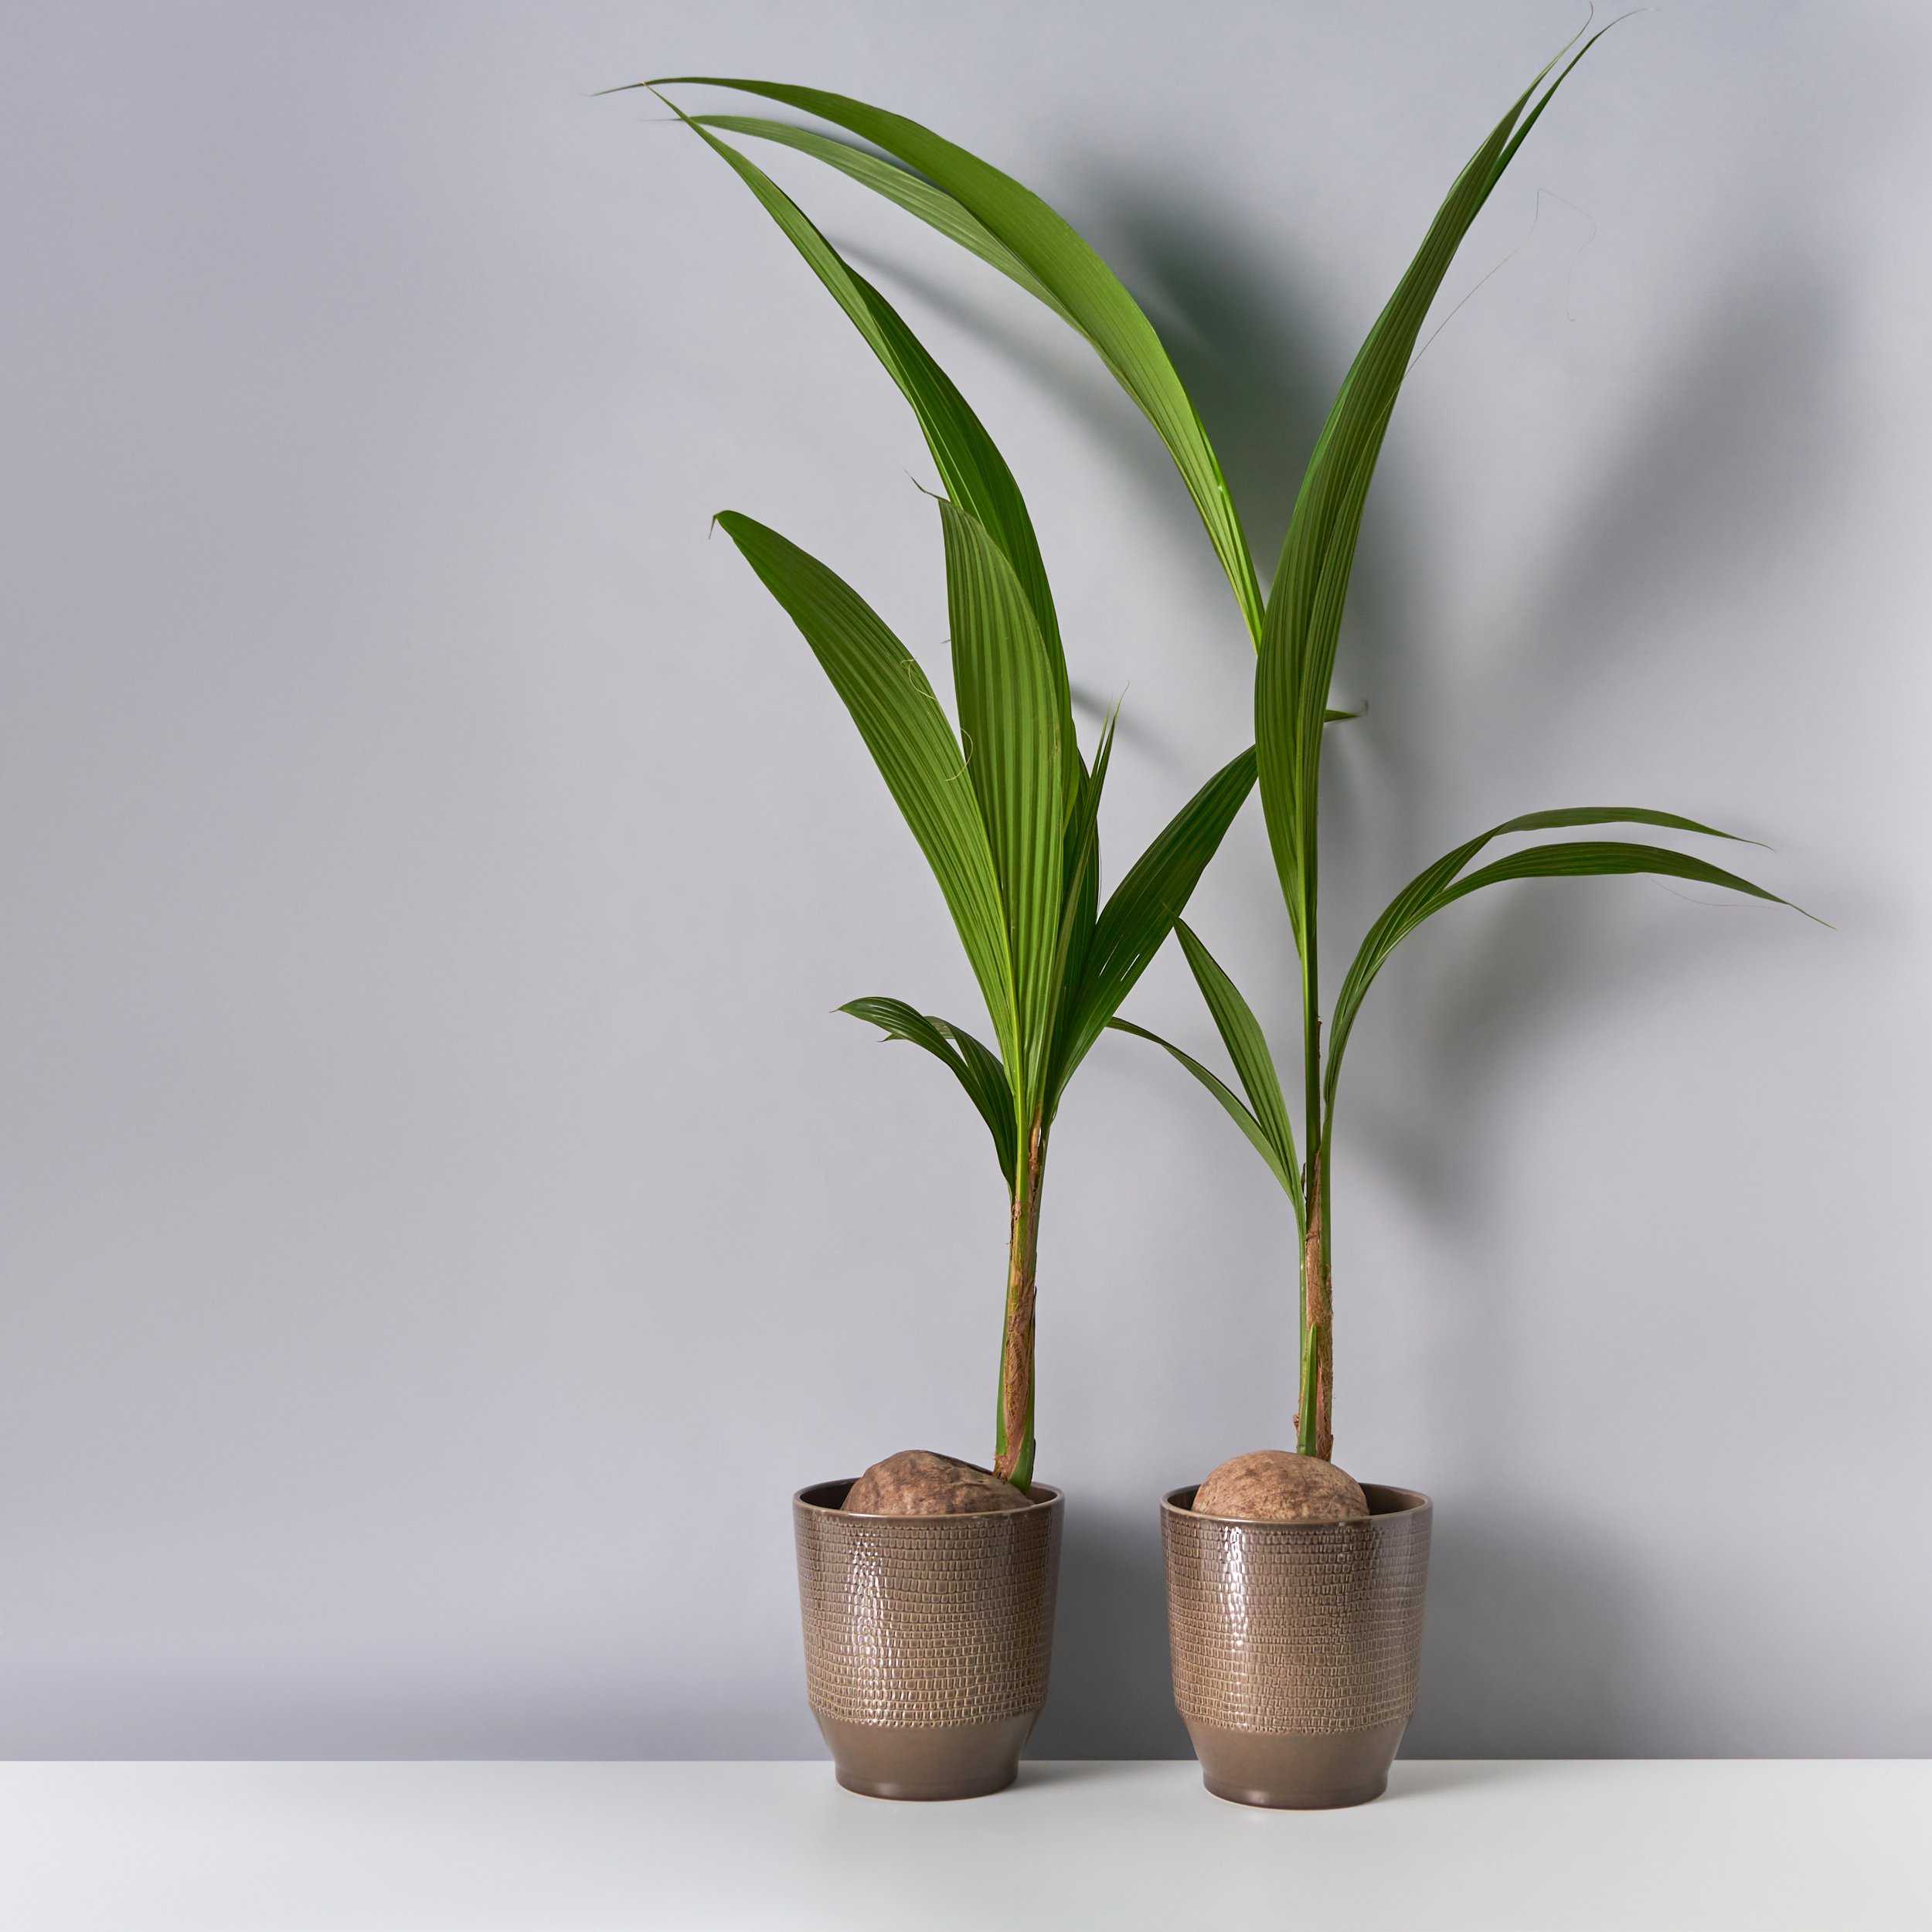 Как вырастить пальму из семян в домашних условиях – пошаговая инструкция с фотографиями [2019]